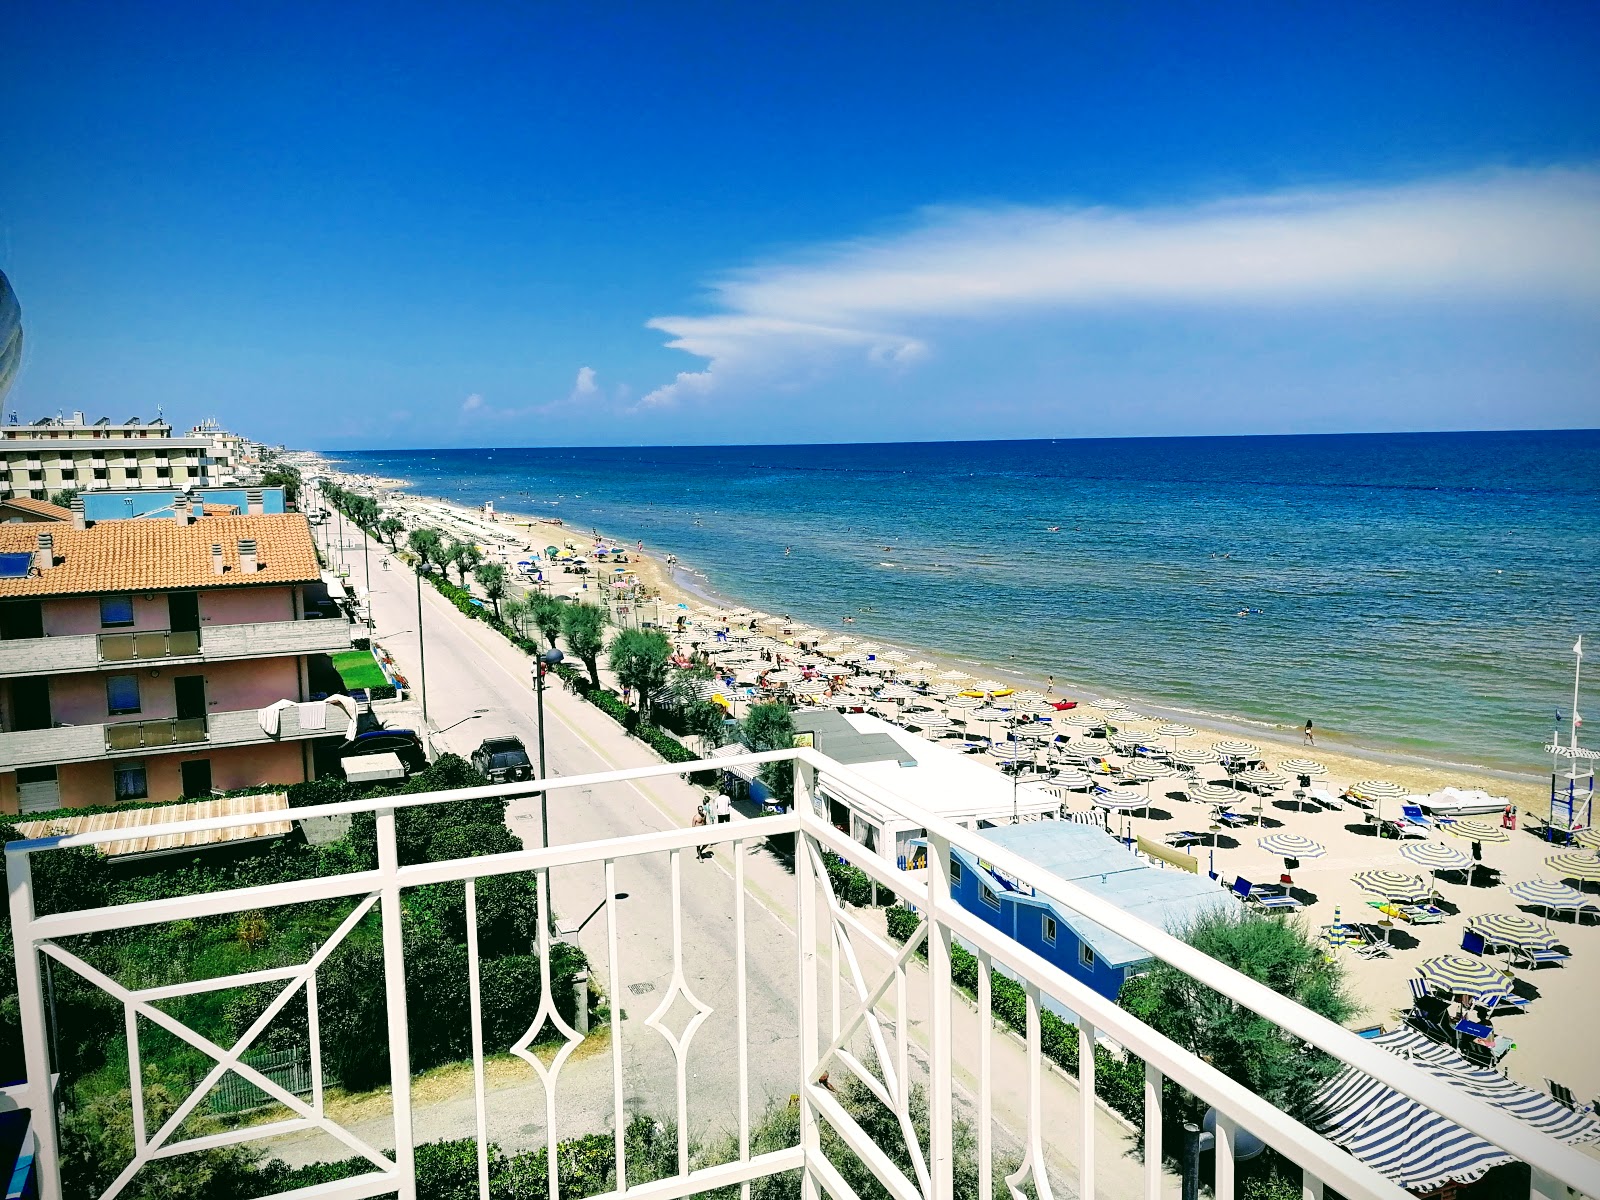 Fotografija Marotta beach priljubljeno mesto med poznavalci sprostitve